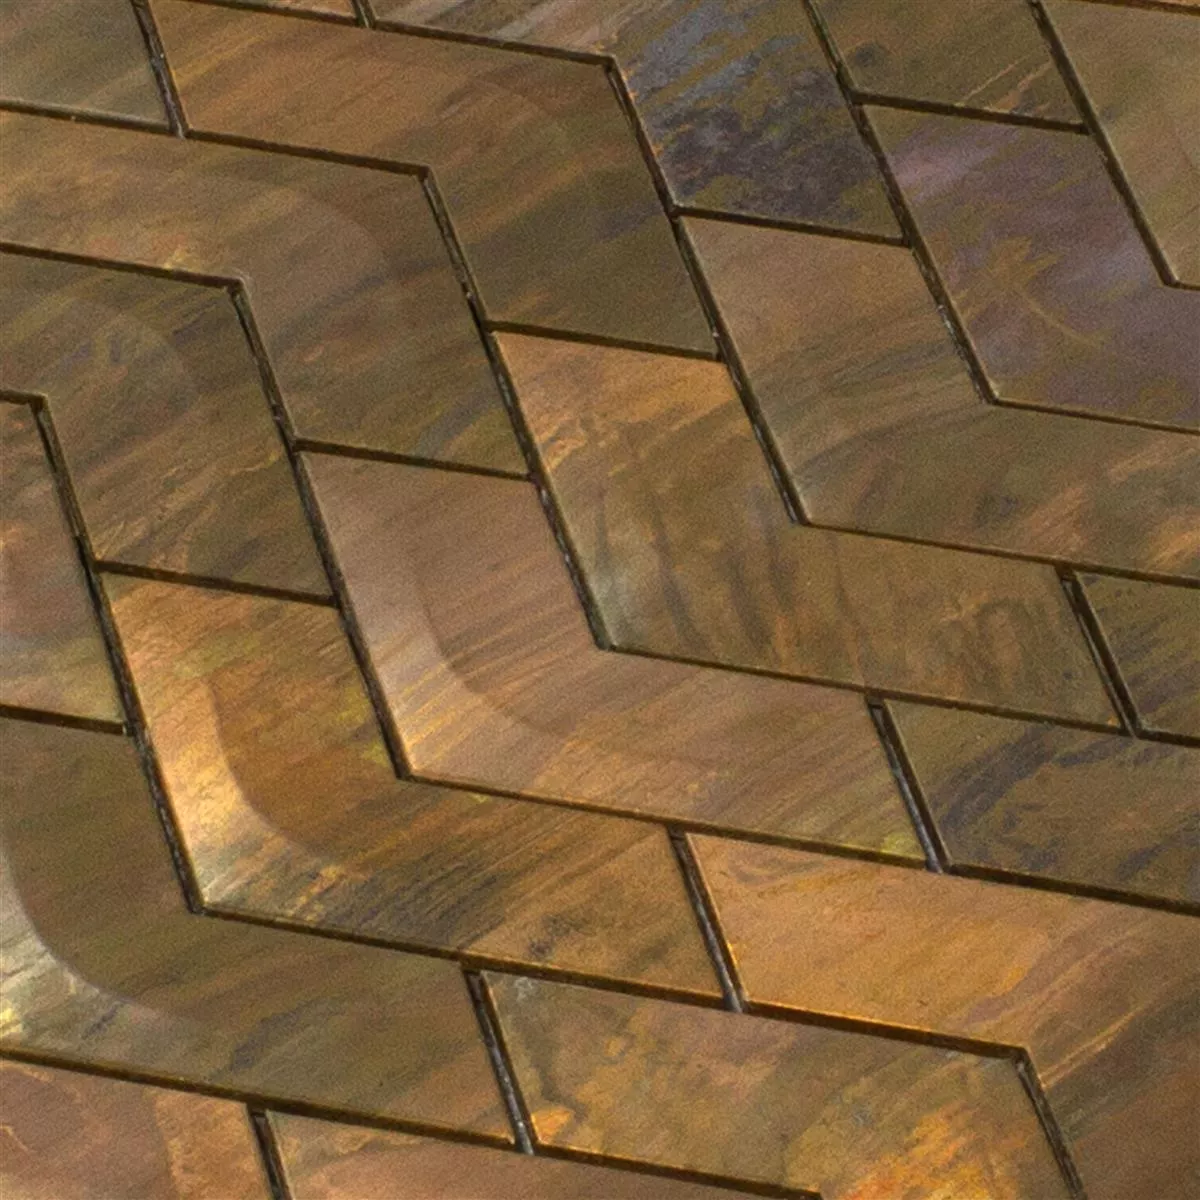 Metall Kupfer Mosaikfliesen Copperfield 3D Welle